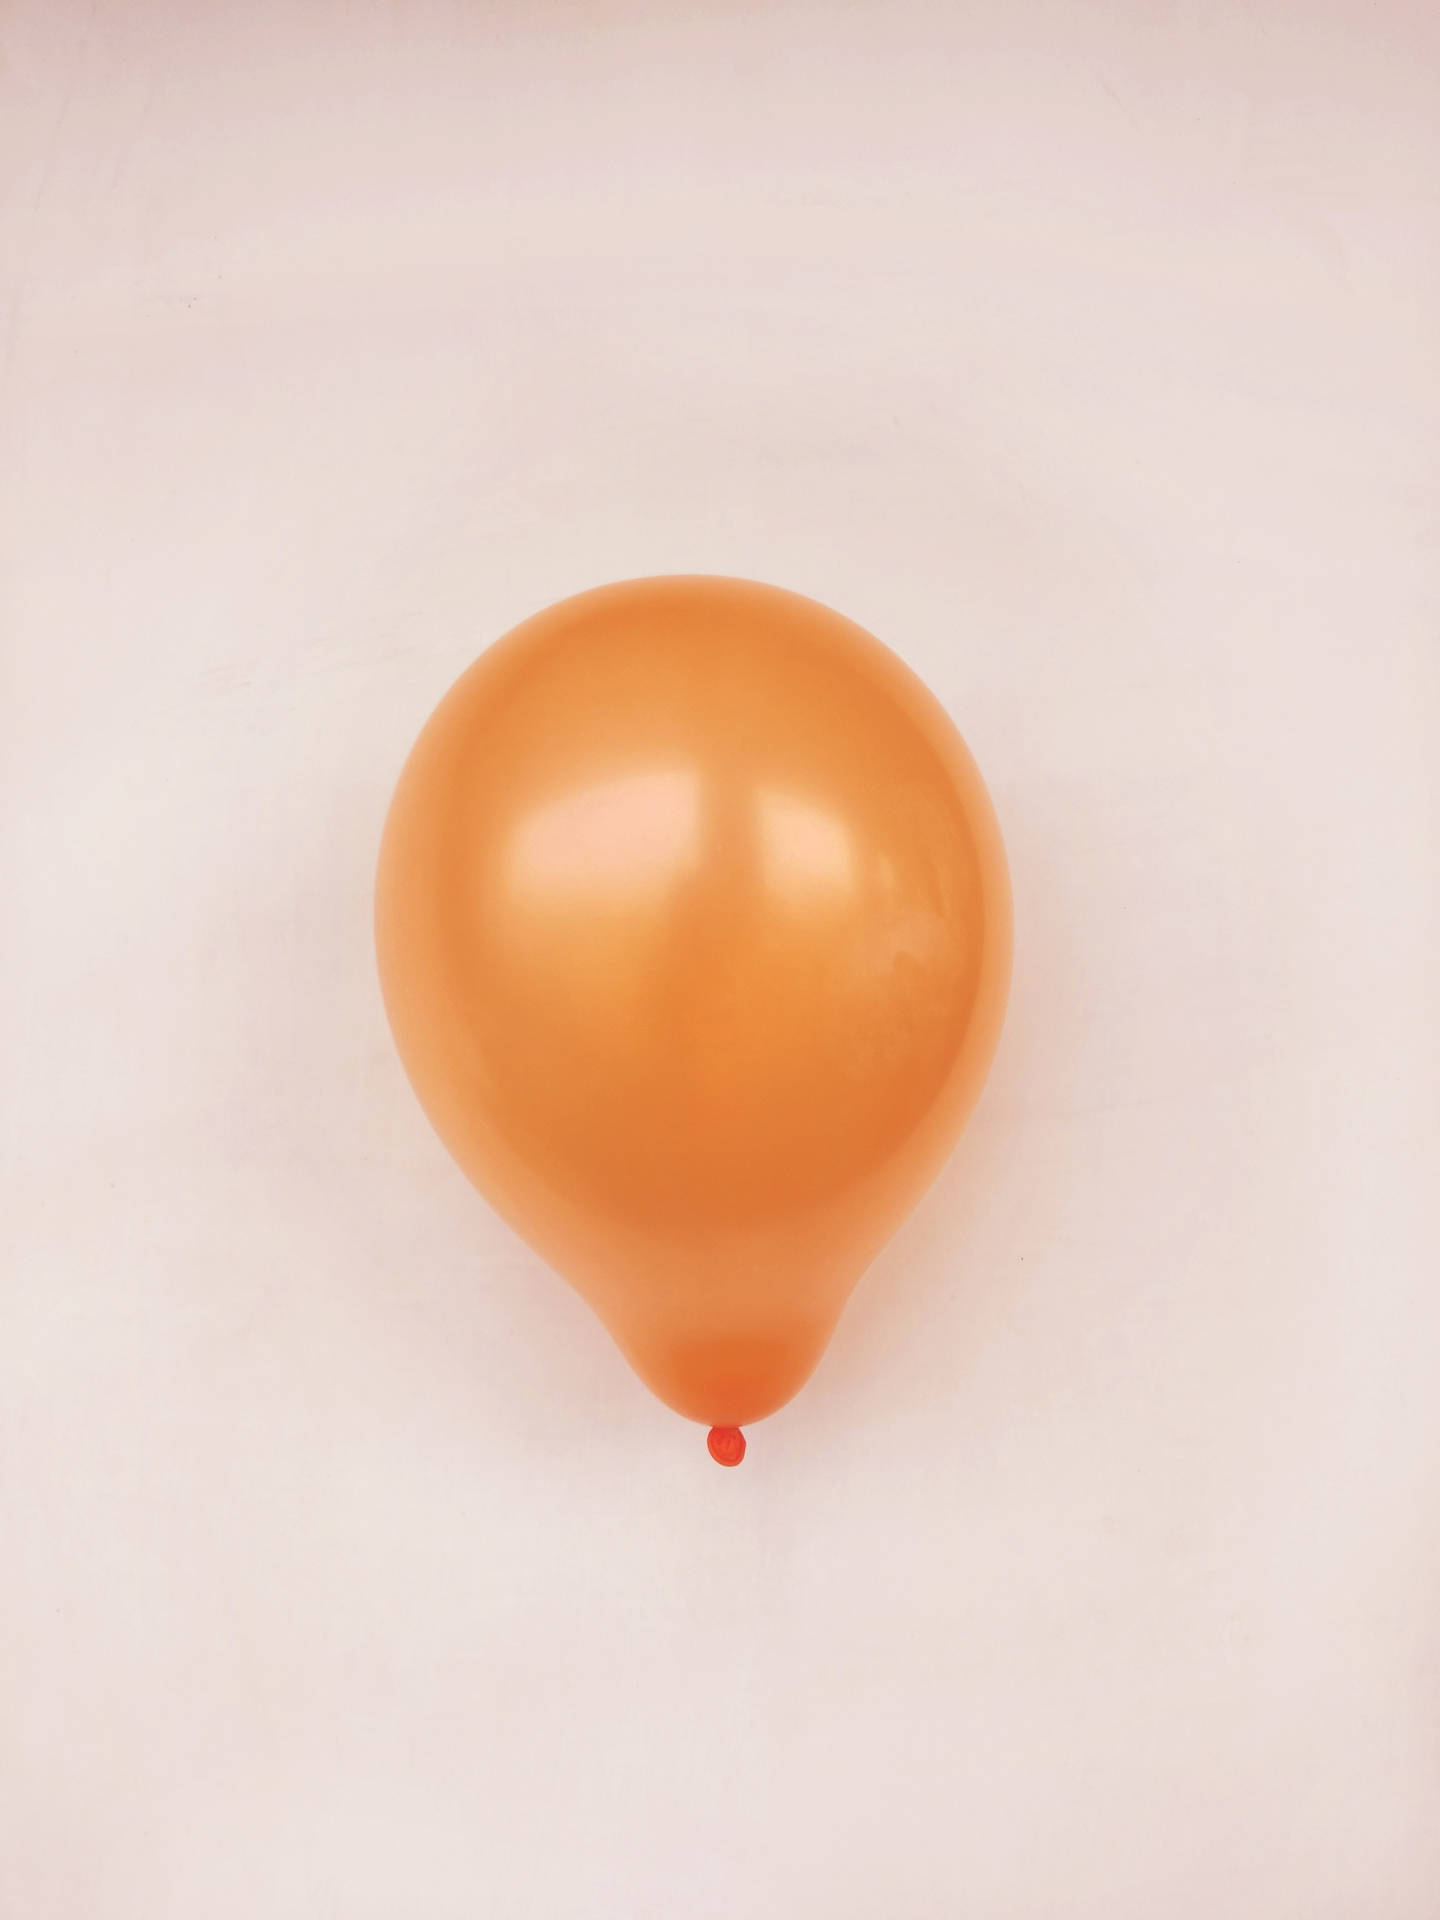 Orange Balloon In Beige Background